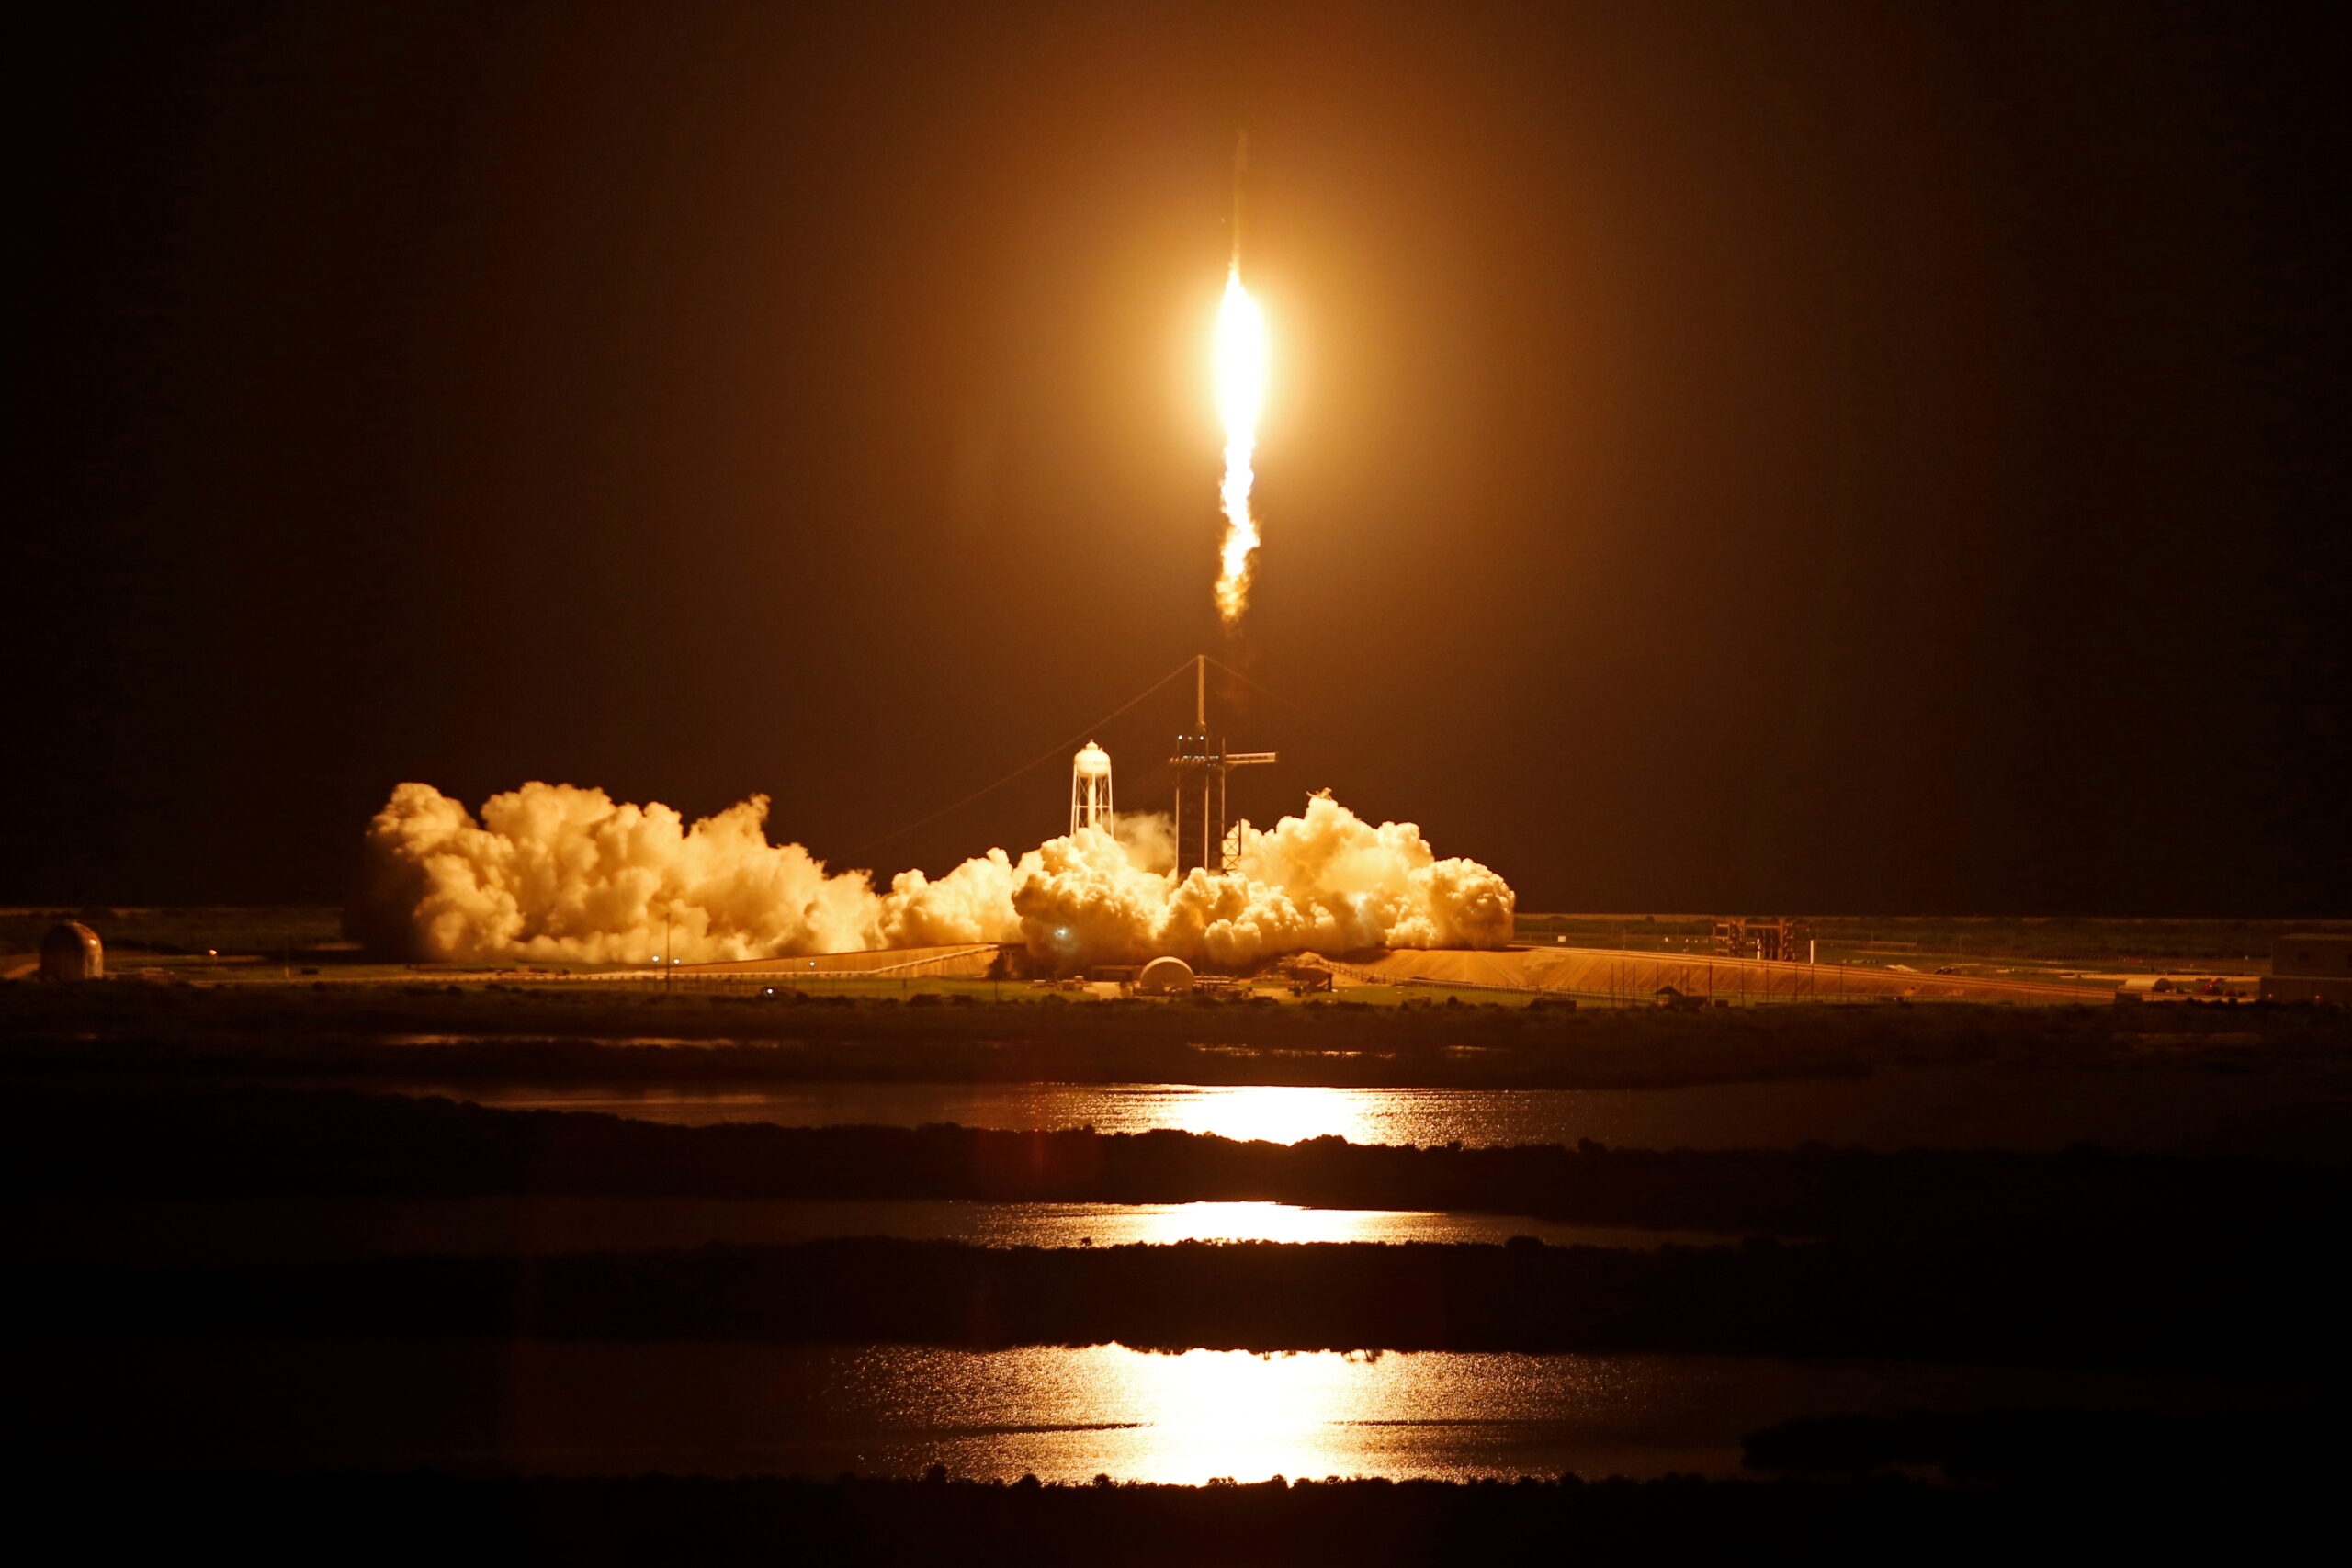 Space X ส่งนักบินอวกาศมือสมัครเล่น 4 คน บินเข้าสู่วงโคจรโลกสำเร็จ – ต่างประเทศ